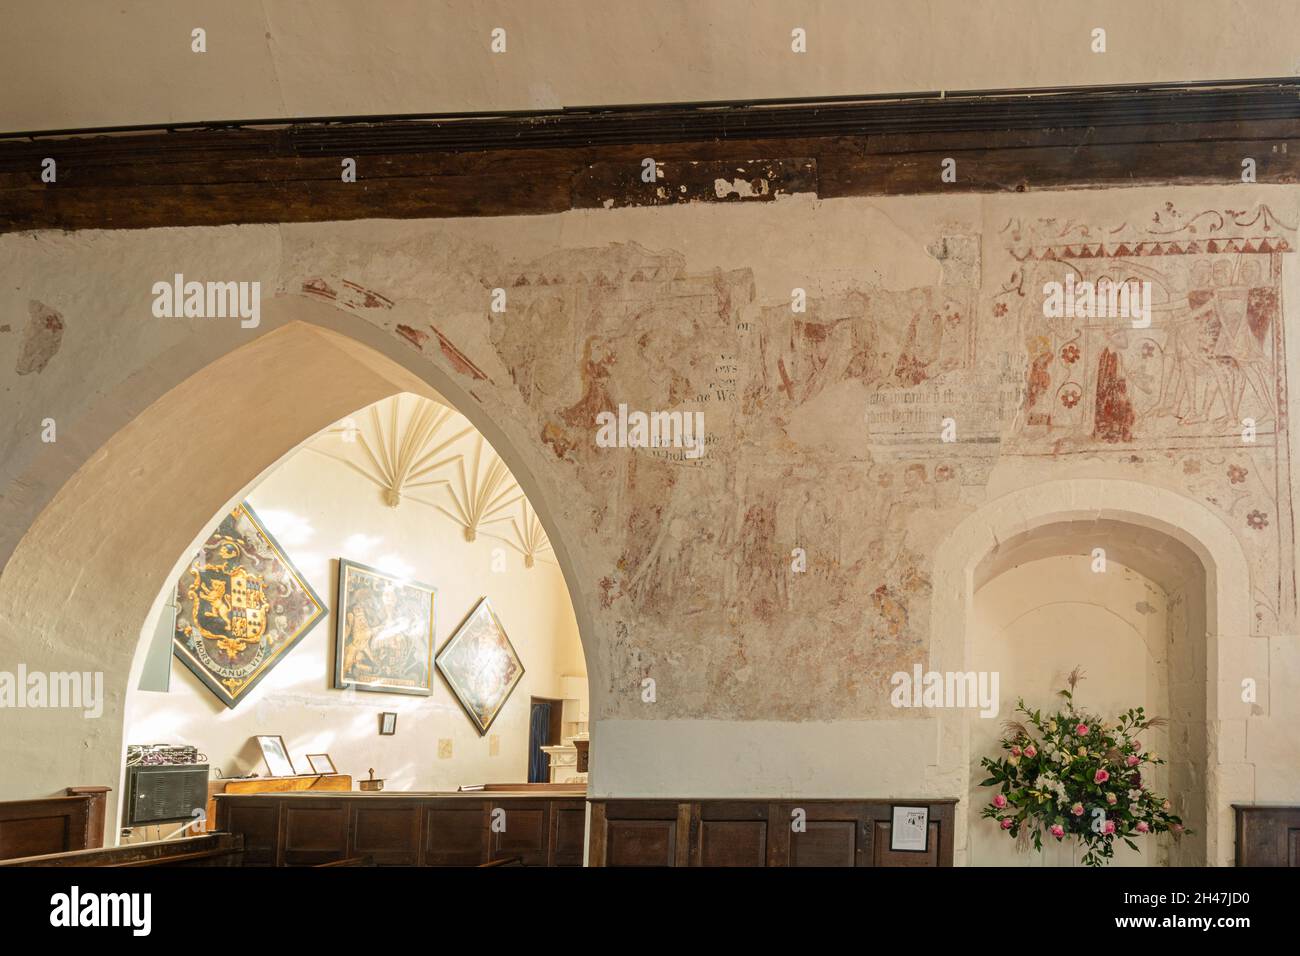 Pinturas murales históricas dentro de la Iglesia de St James, pueblo de Bramley, Hampshire, Reino Unido, un edificio catalogado de grado I. Pintura del asesinato de Thomas Becket Foto de stock